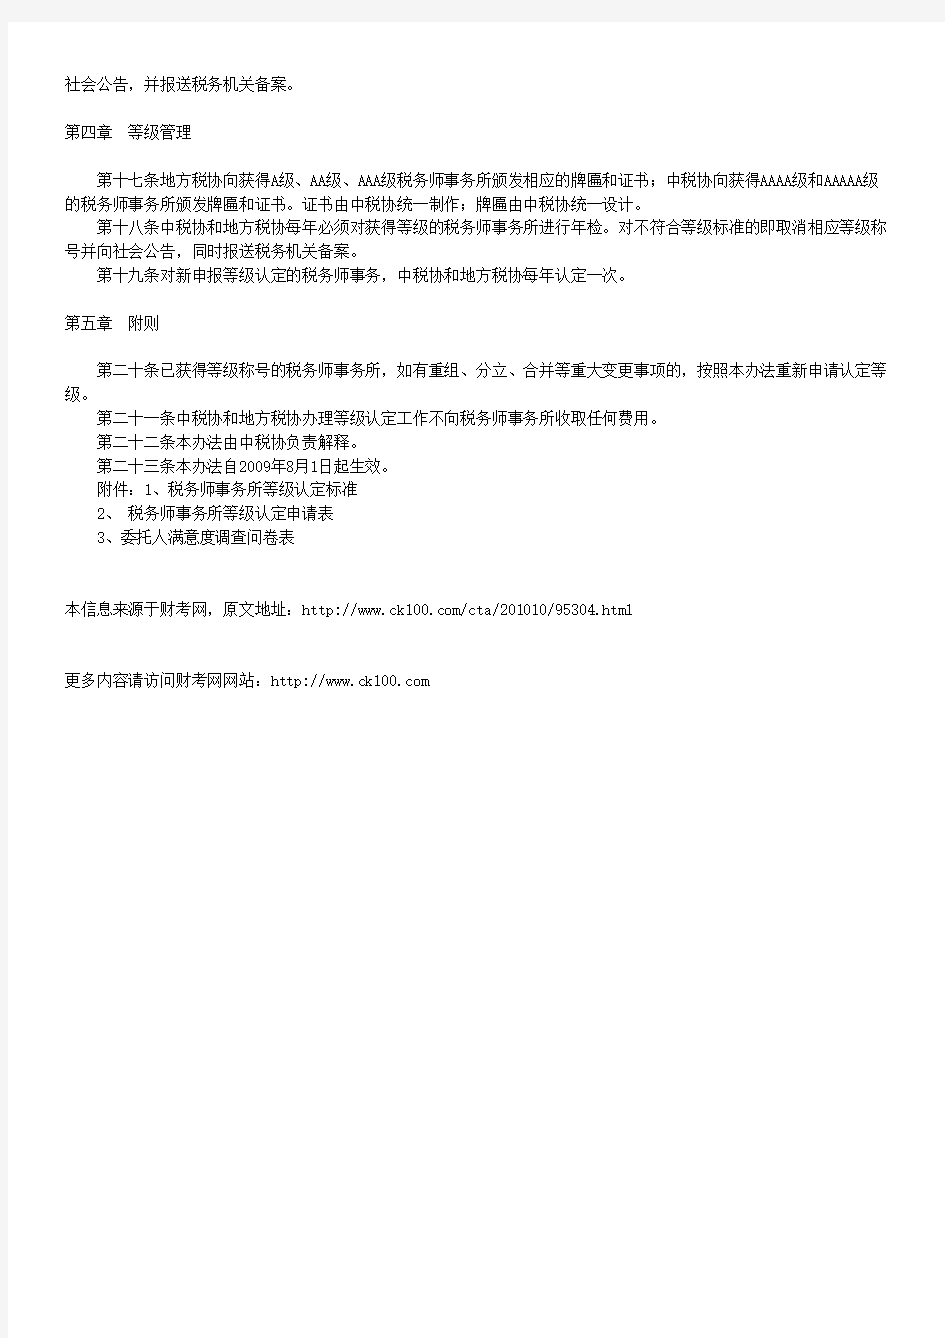 中国注册税务师协会税务师事务所等级认定办法(试行)